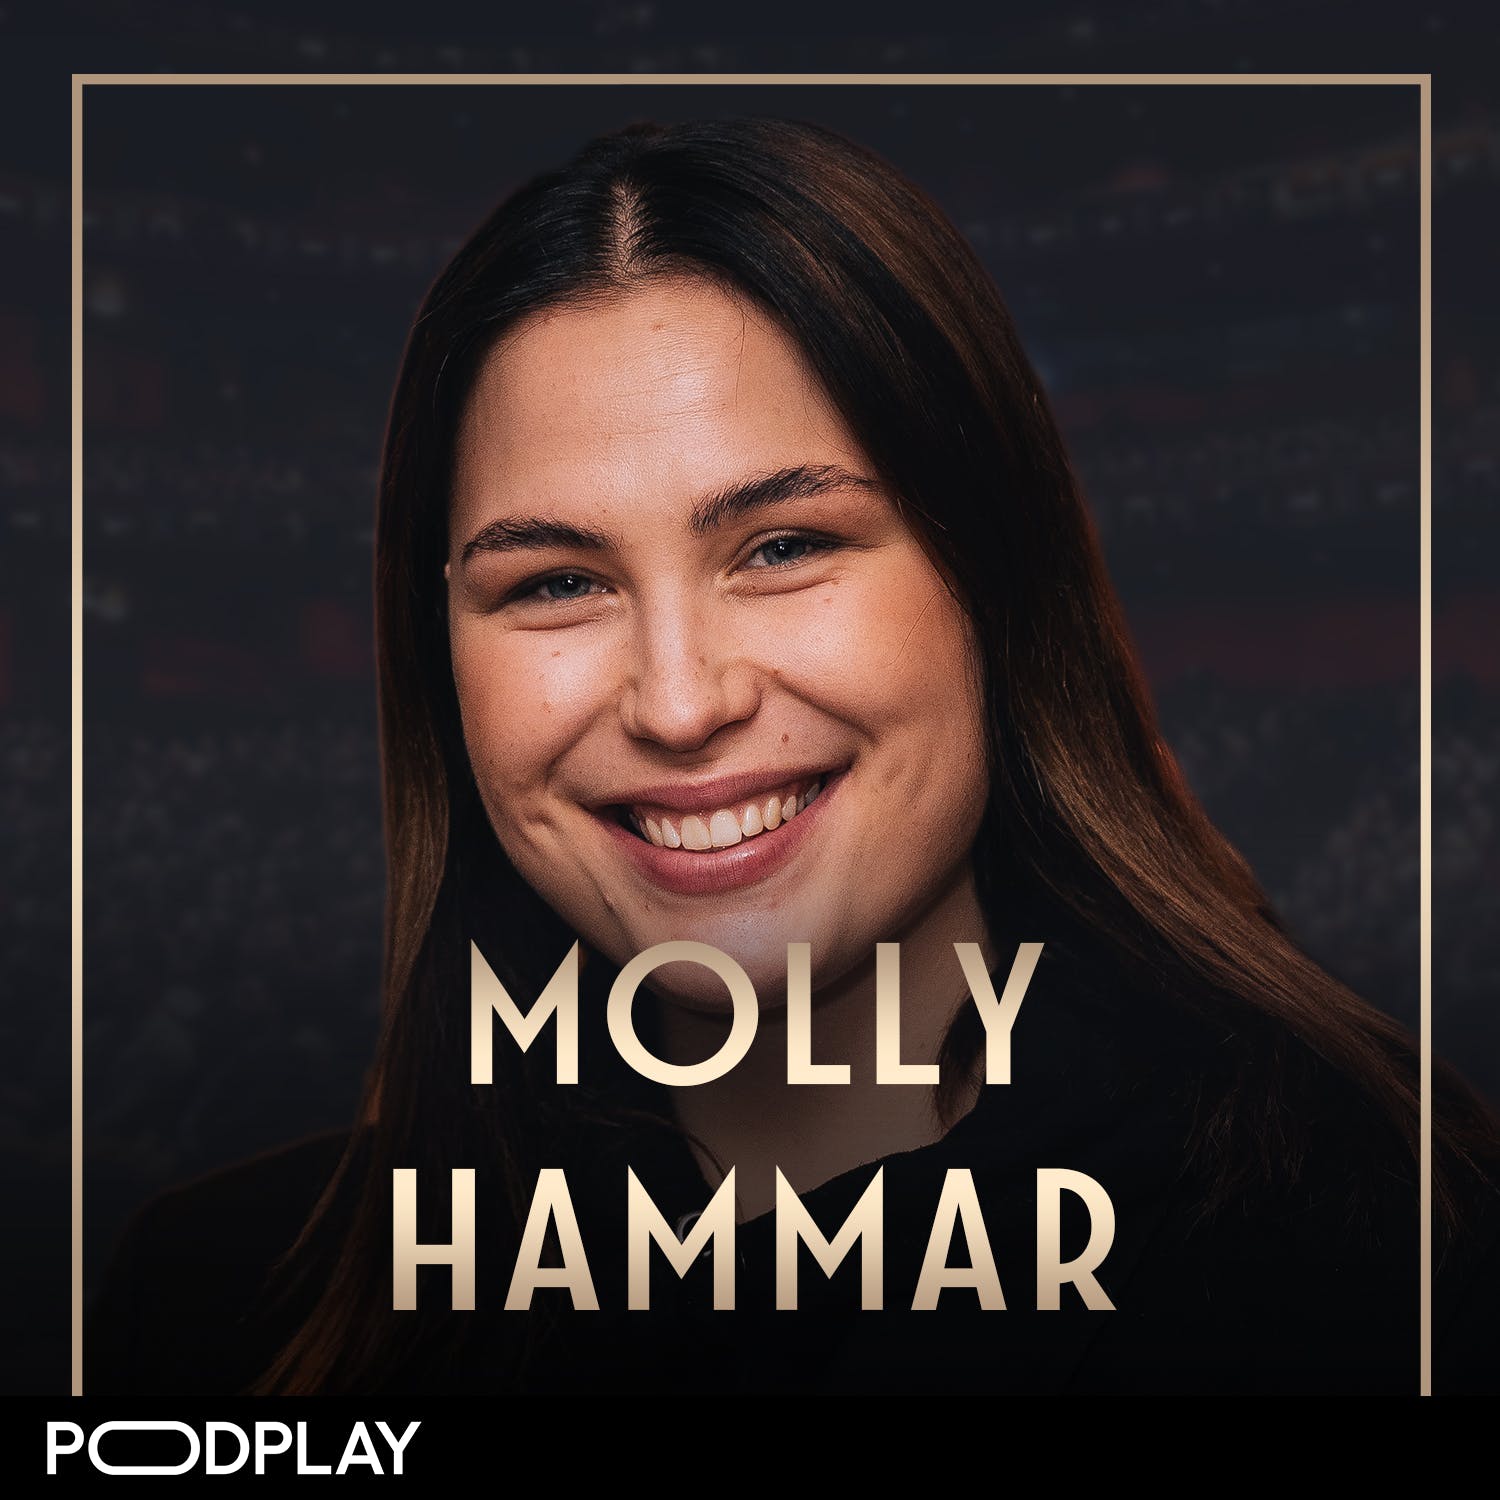 401. Molly Hammar - Våga vara bäst!, Original